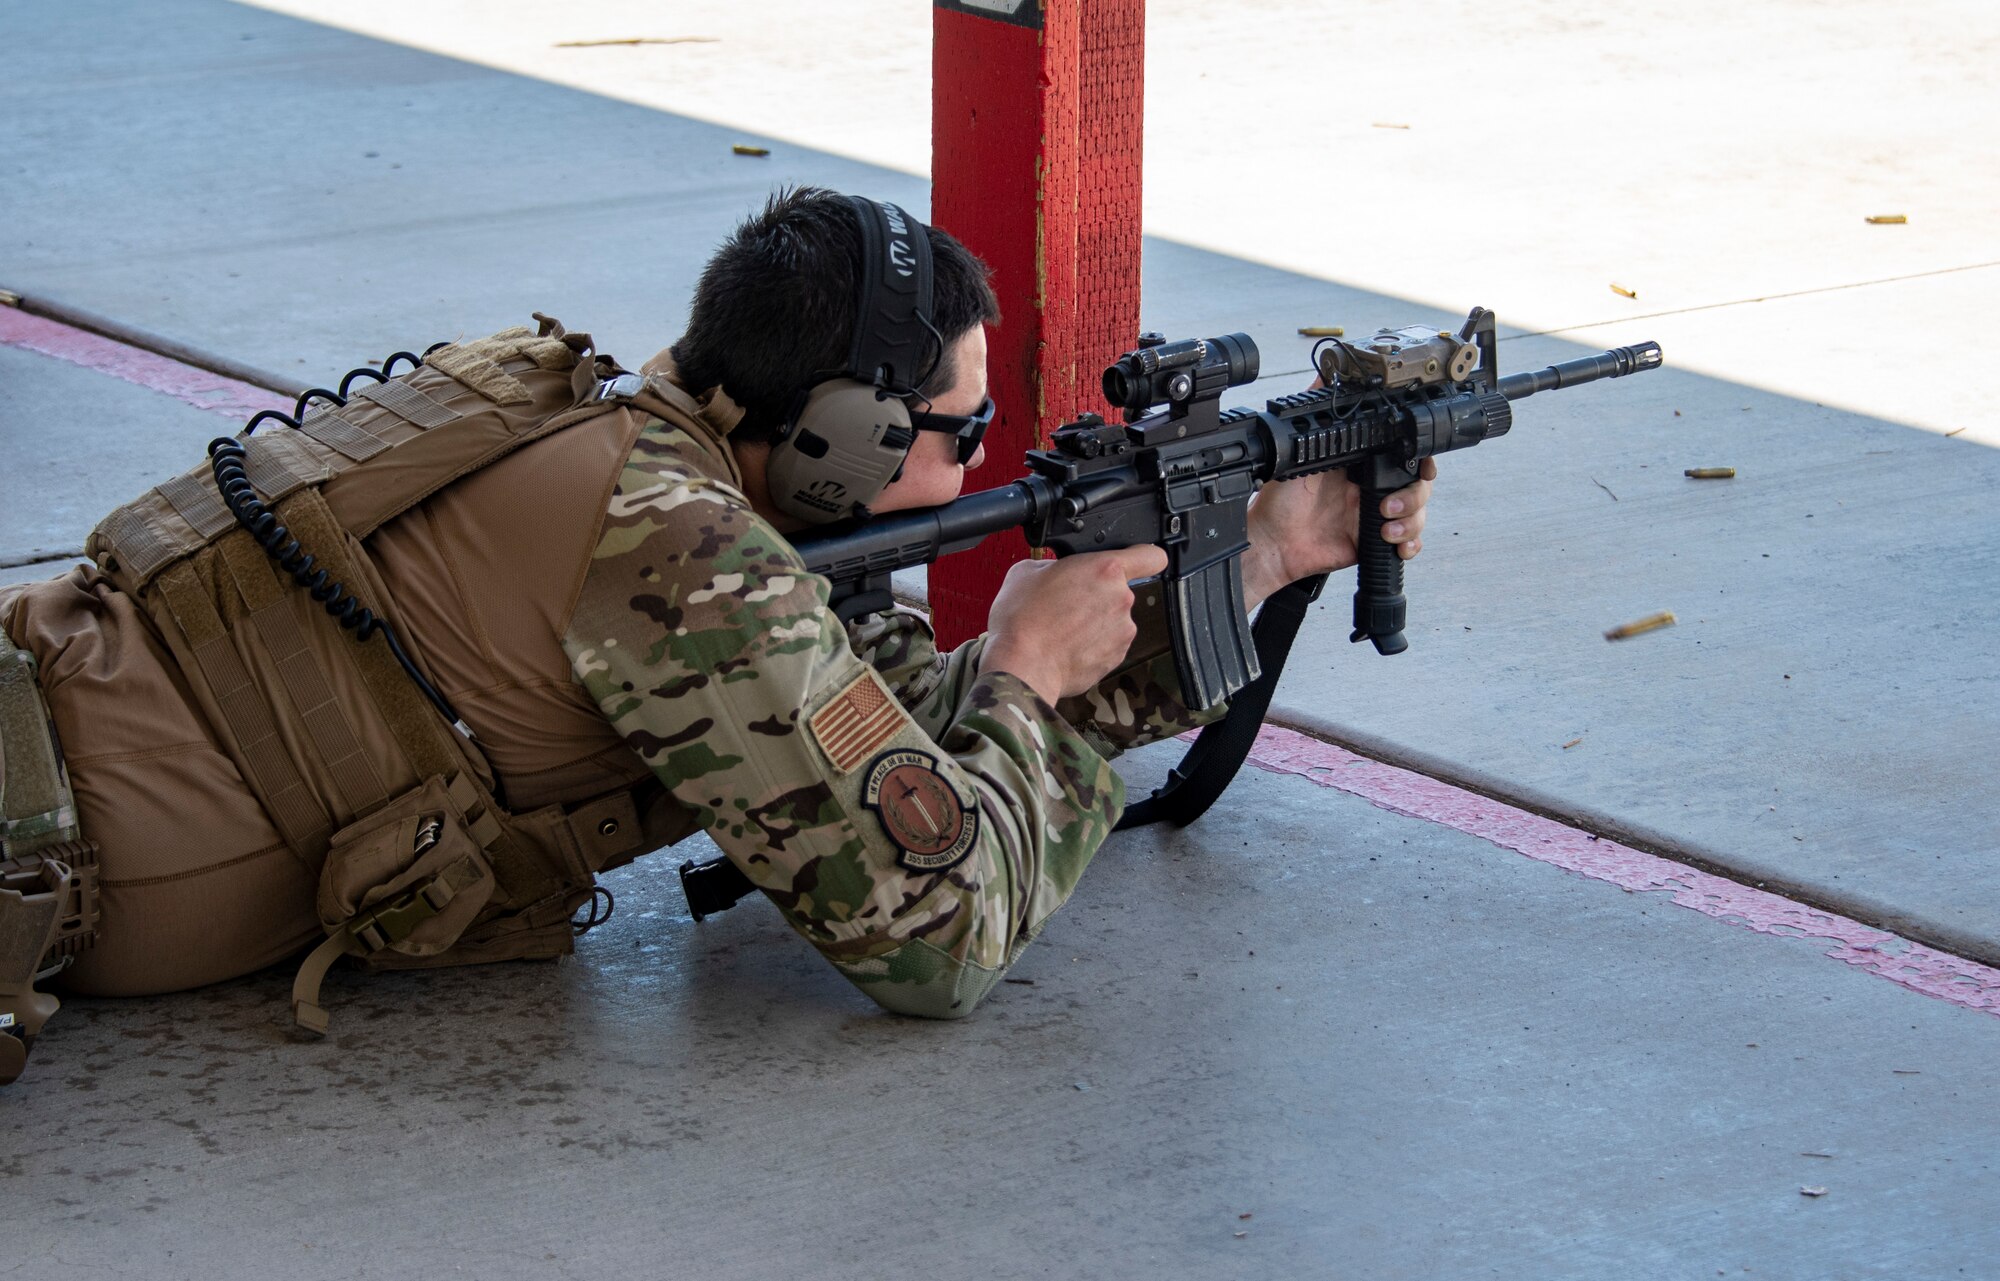 A photo of an airmen firing an rifle